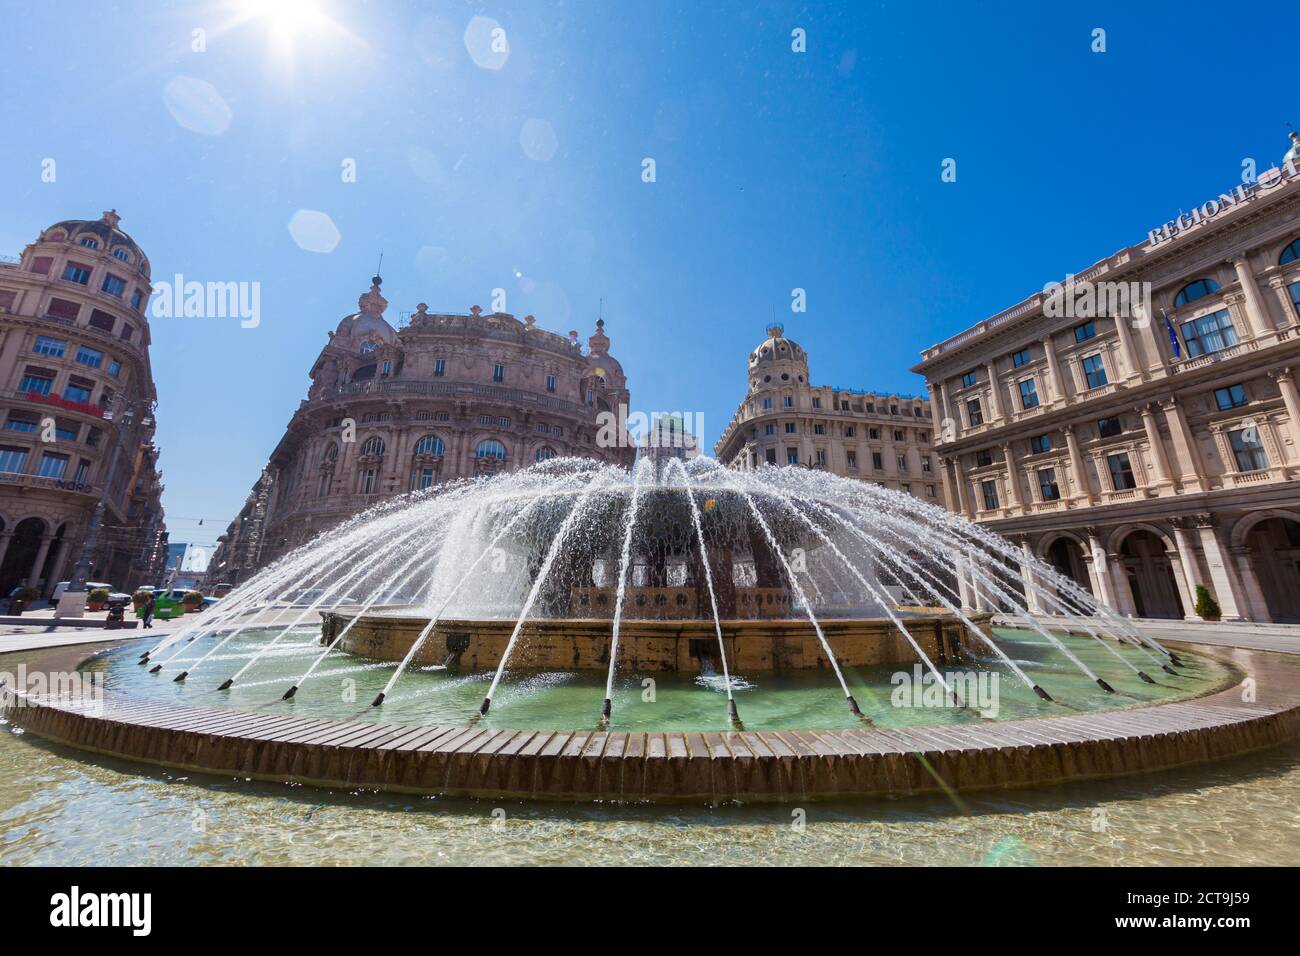 Italy, Liguria, Genoa, Piazza de Ferrari with fountain, Palazzo della Regione Liguria Stock Photo